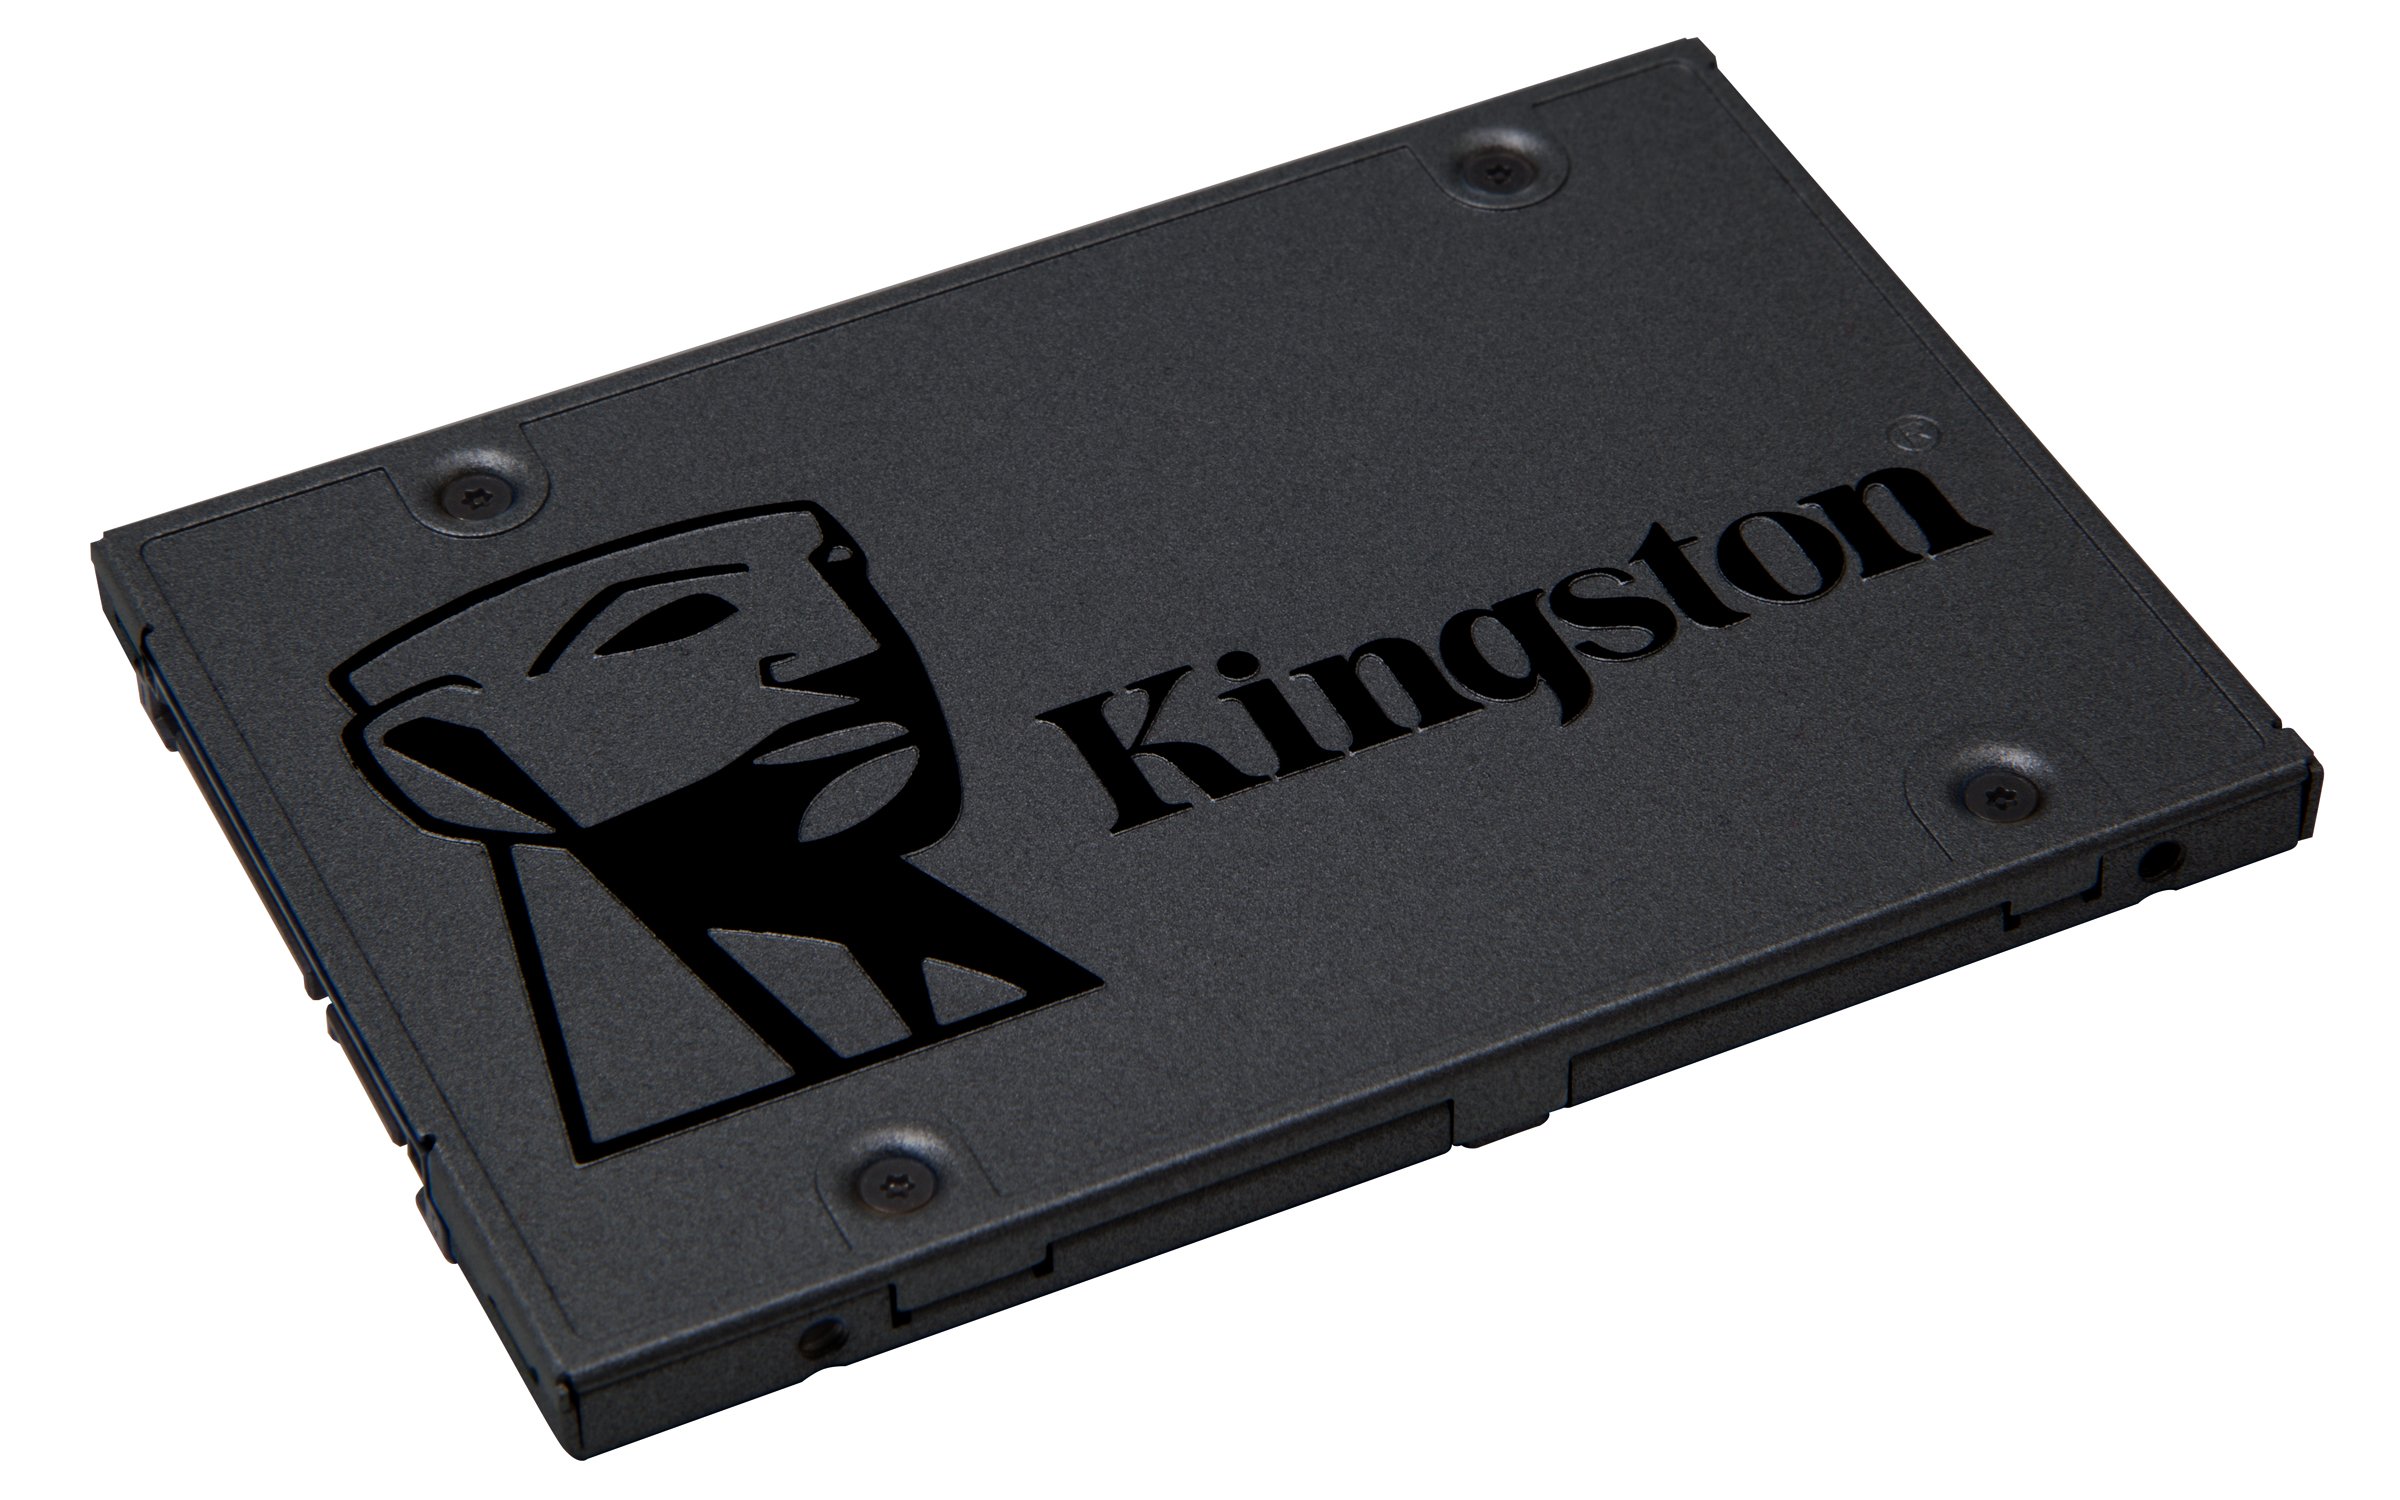 キングストンテクノロジー SSD Q500 240GB 2.5インチ 7mm SATA3 3D NAND採用 SQ500S37240G 削除削除品 3年